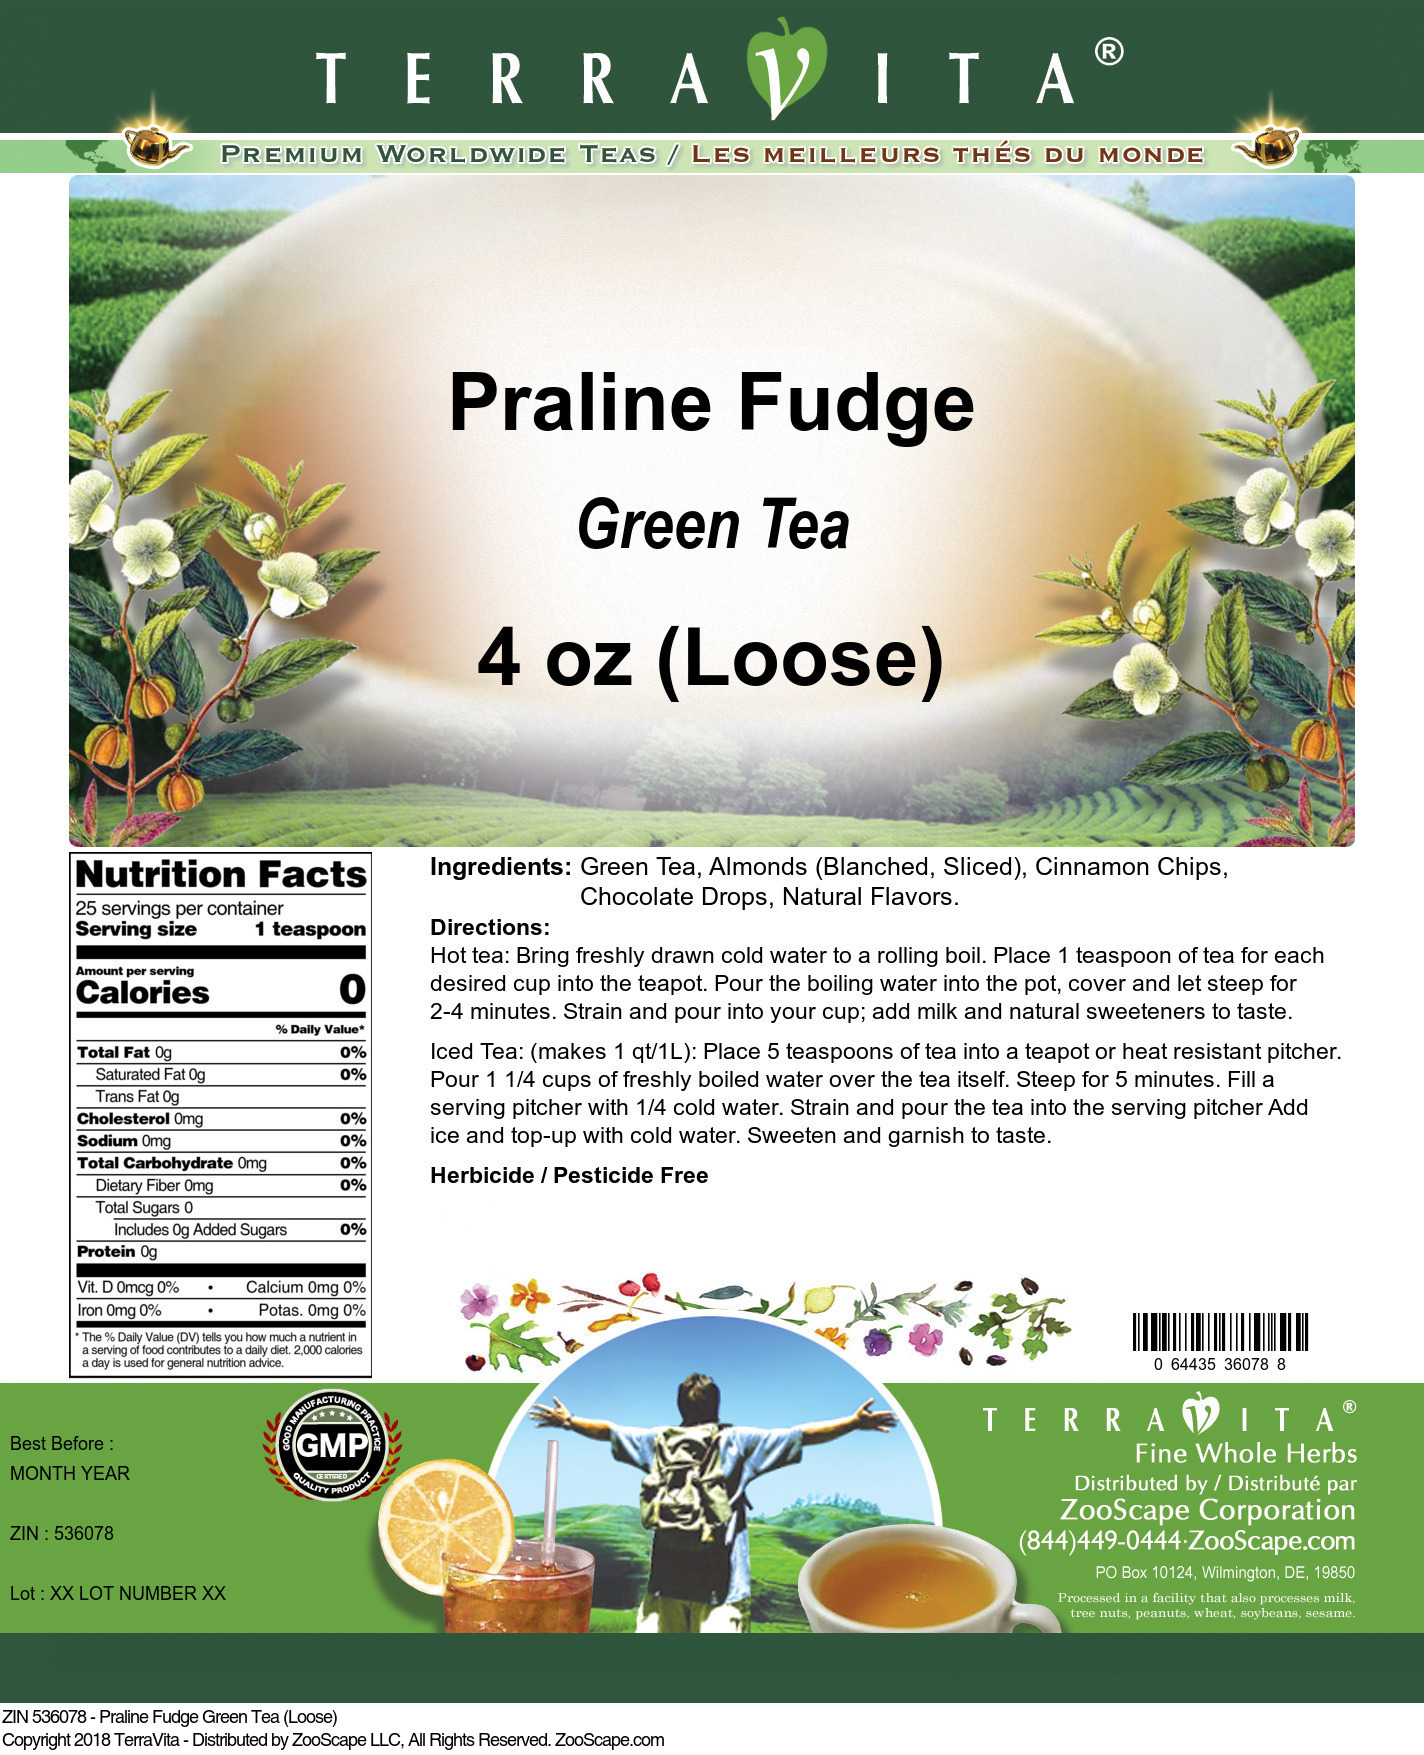 Praline Fudge Green Tea (Loose) - Label